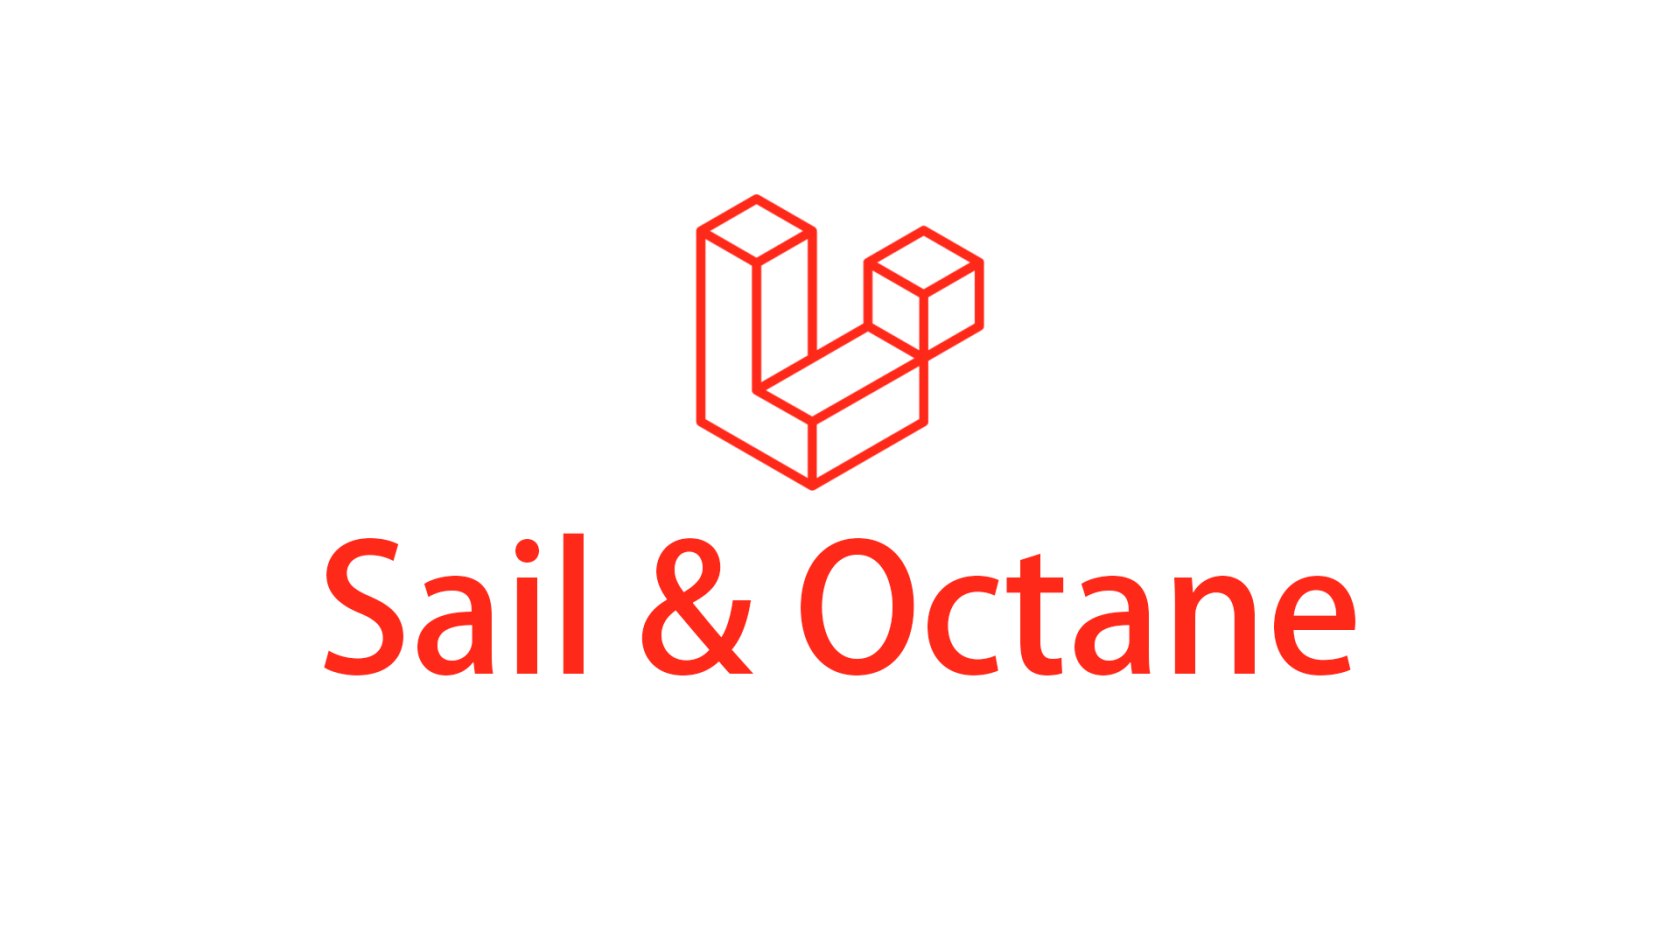 使用 Laravel Sail 添加和开发 Laravel Octane 应用（兼容 Debug）